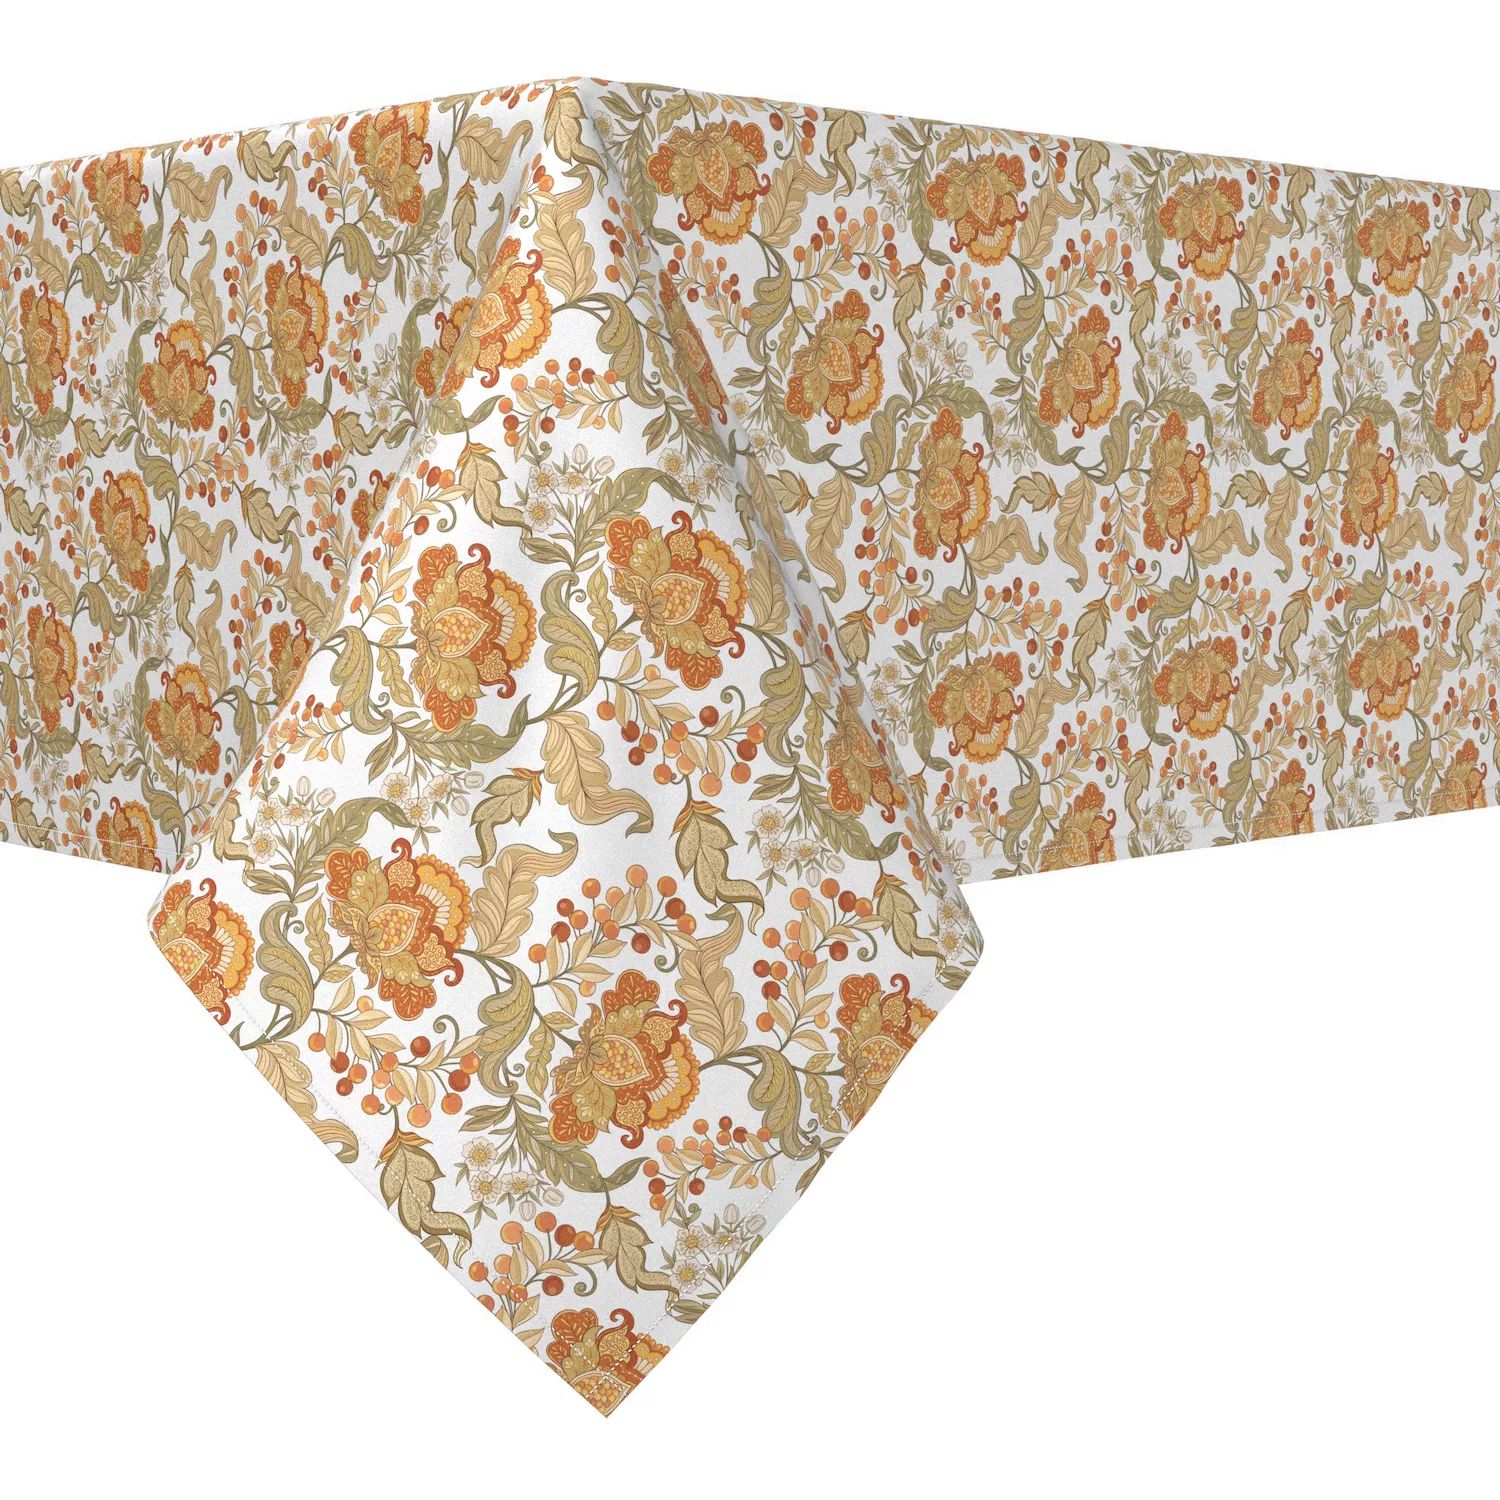 Прямоугольная скатерть, 100 % хлопок, 60х84 дюйма, с цветочным принтом в винтажном стиле. скатерть кружевная в винтажном стиле хлопковая скатерть в клетку прямоугольная для кухни столовой